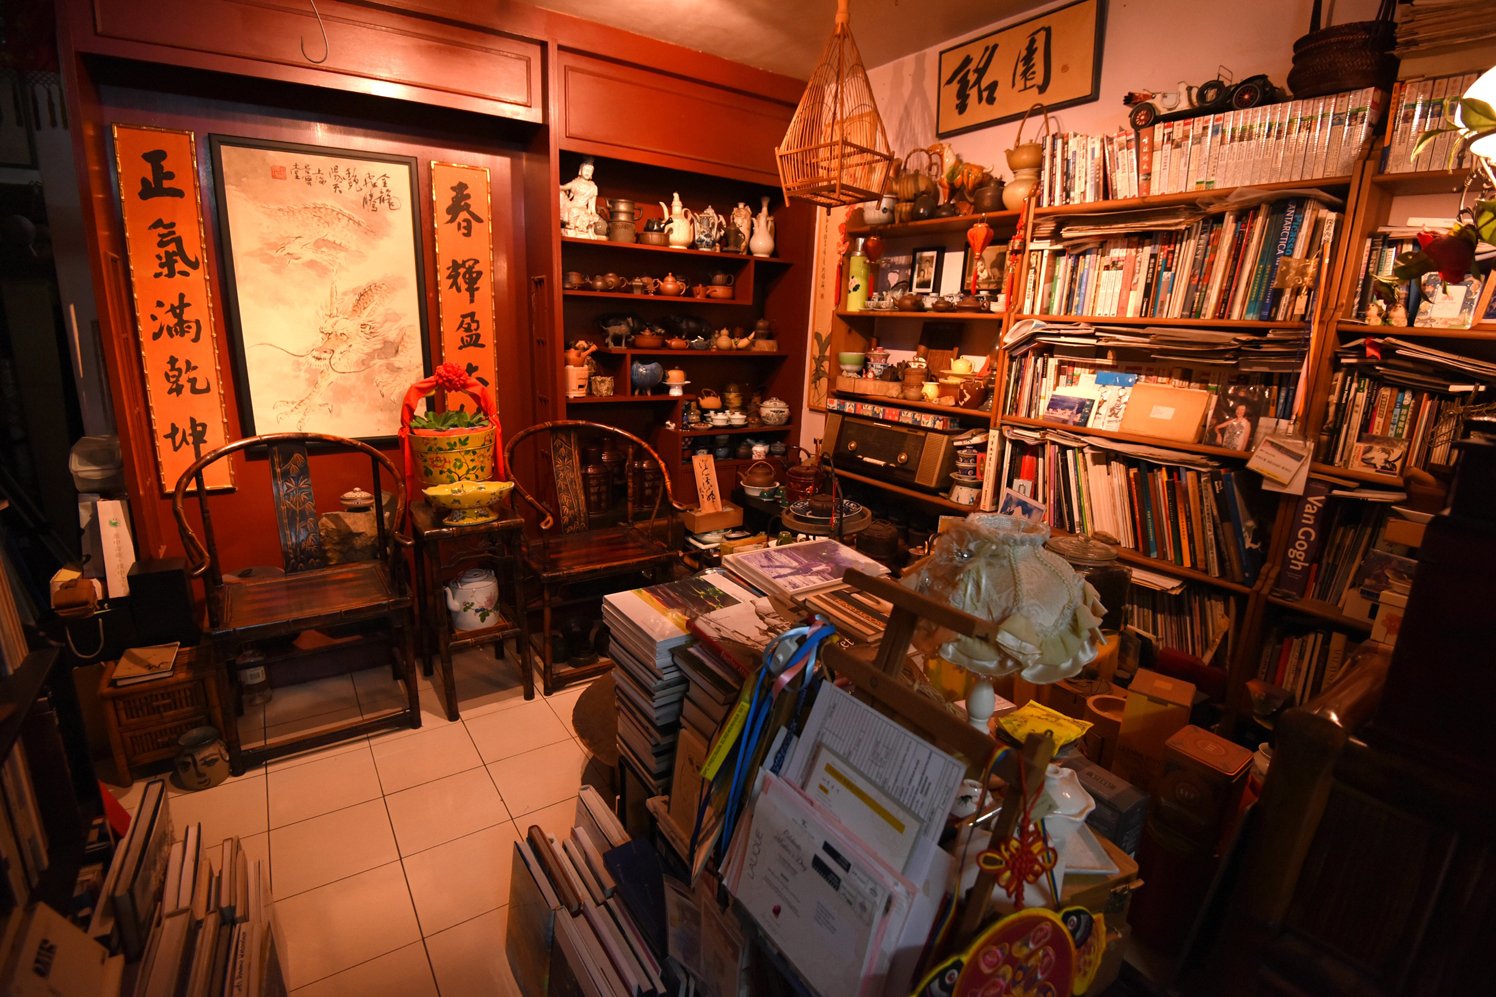 黄振景的家中有超过1万本的藏书，内容涵盖美术、 饮食、旅游、陶艺等，是他培养广泛兴趣的良伴。（摄影：黄良儒）